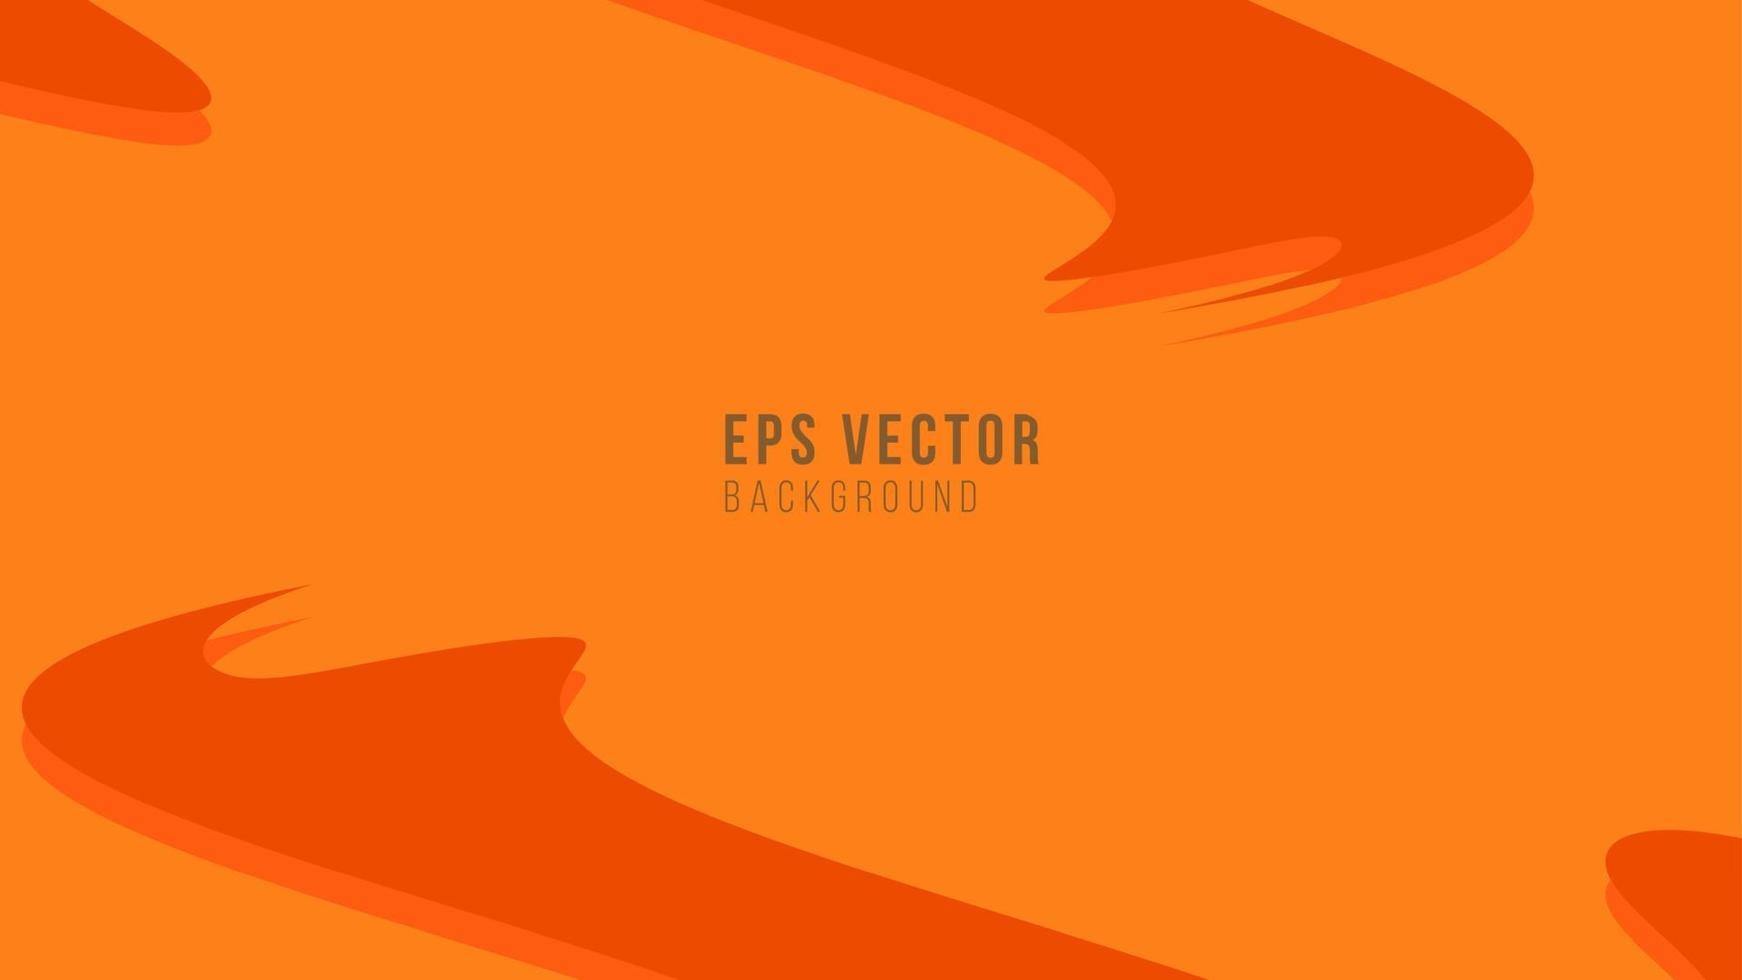 líneas onduladas naranjas abstractas eps vector de fondo